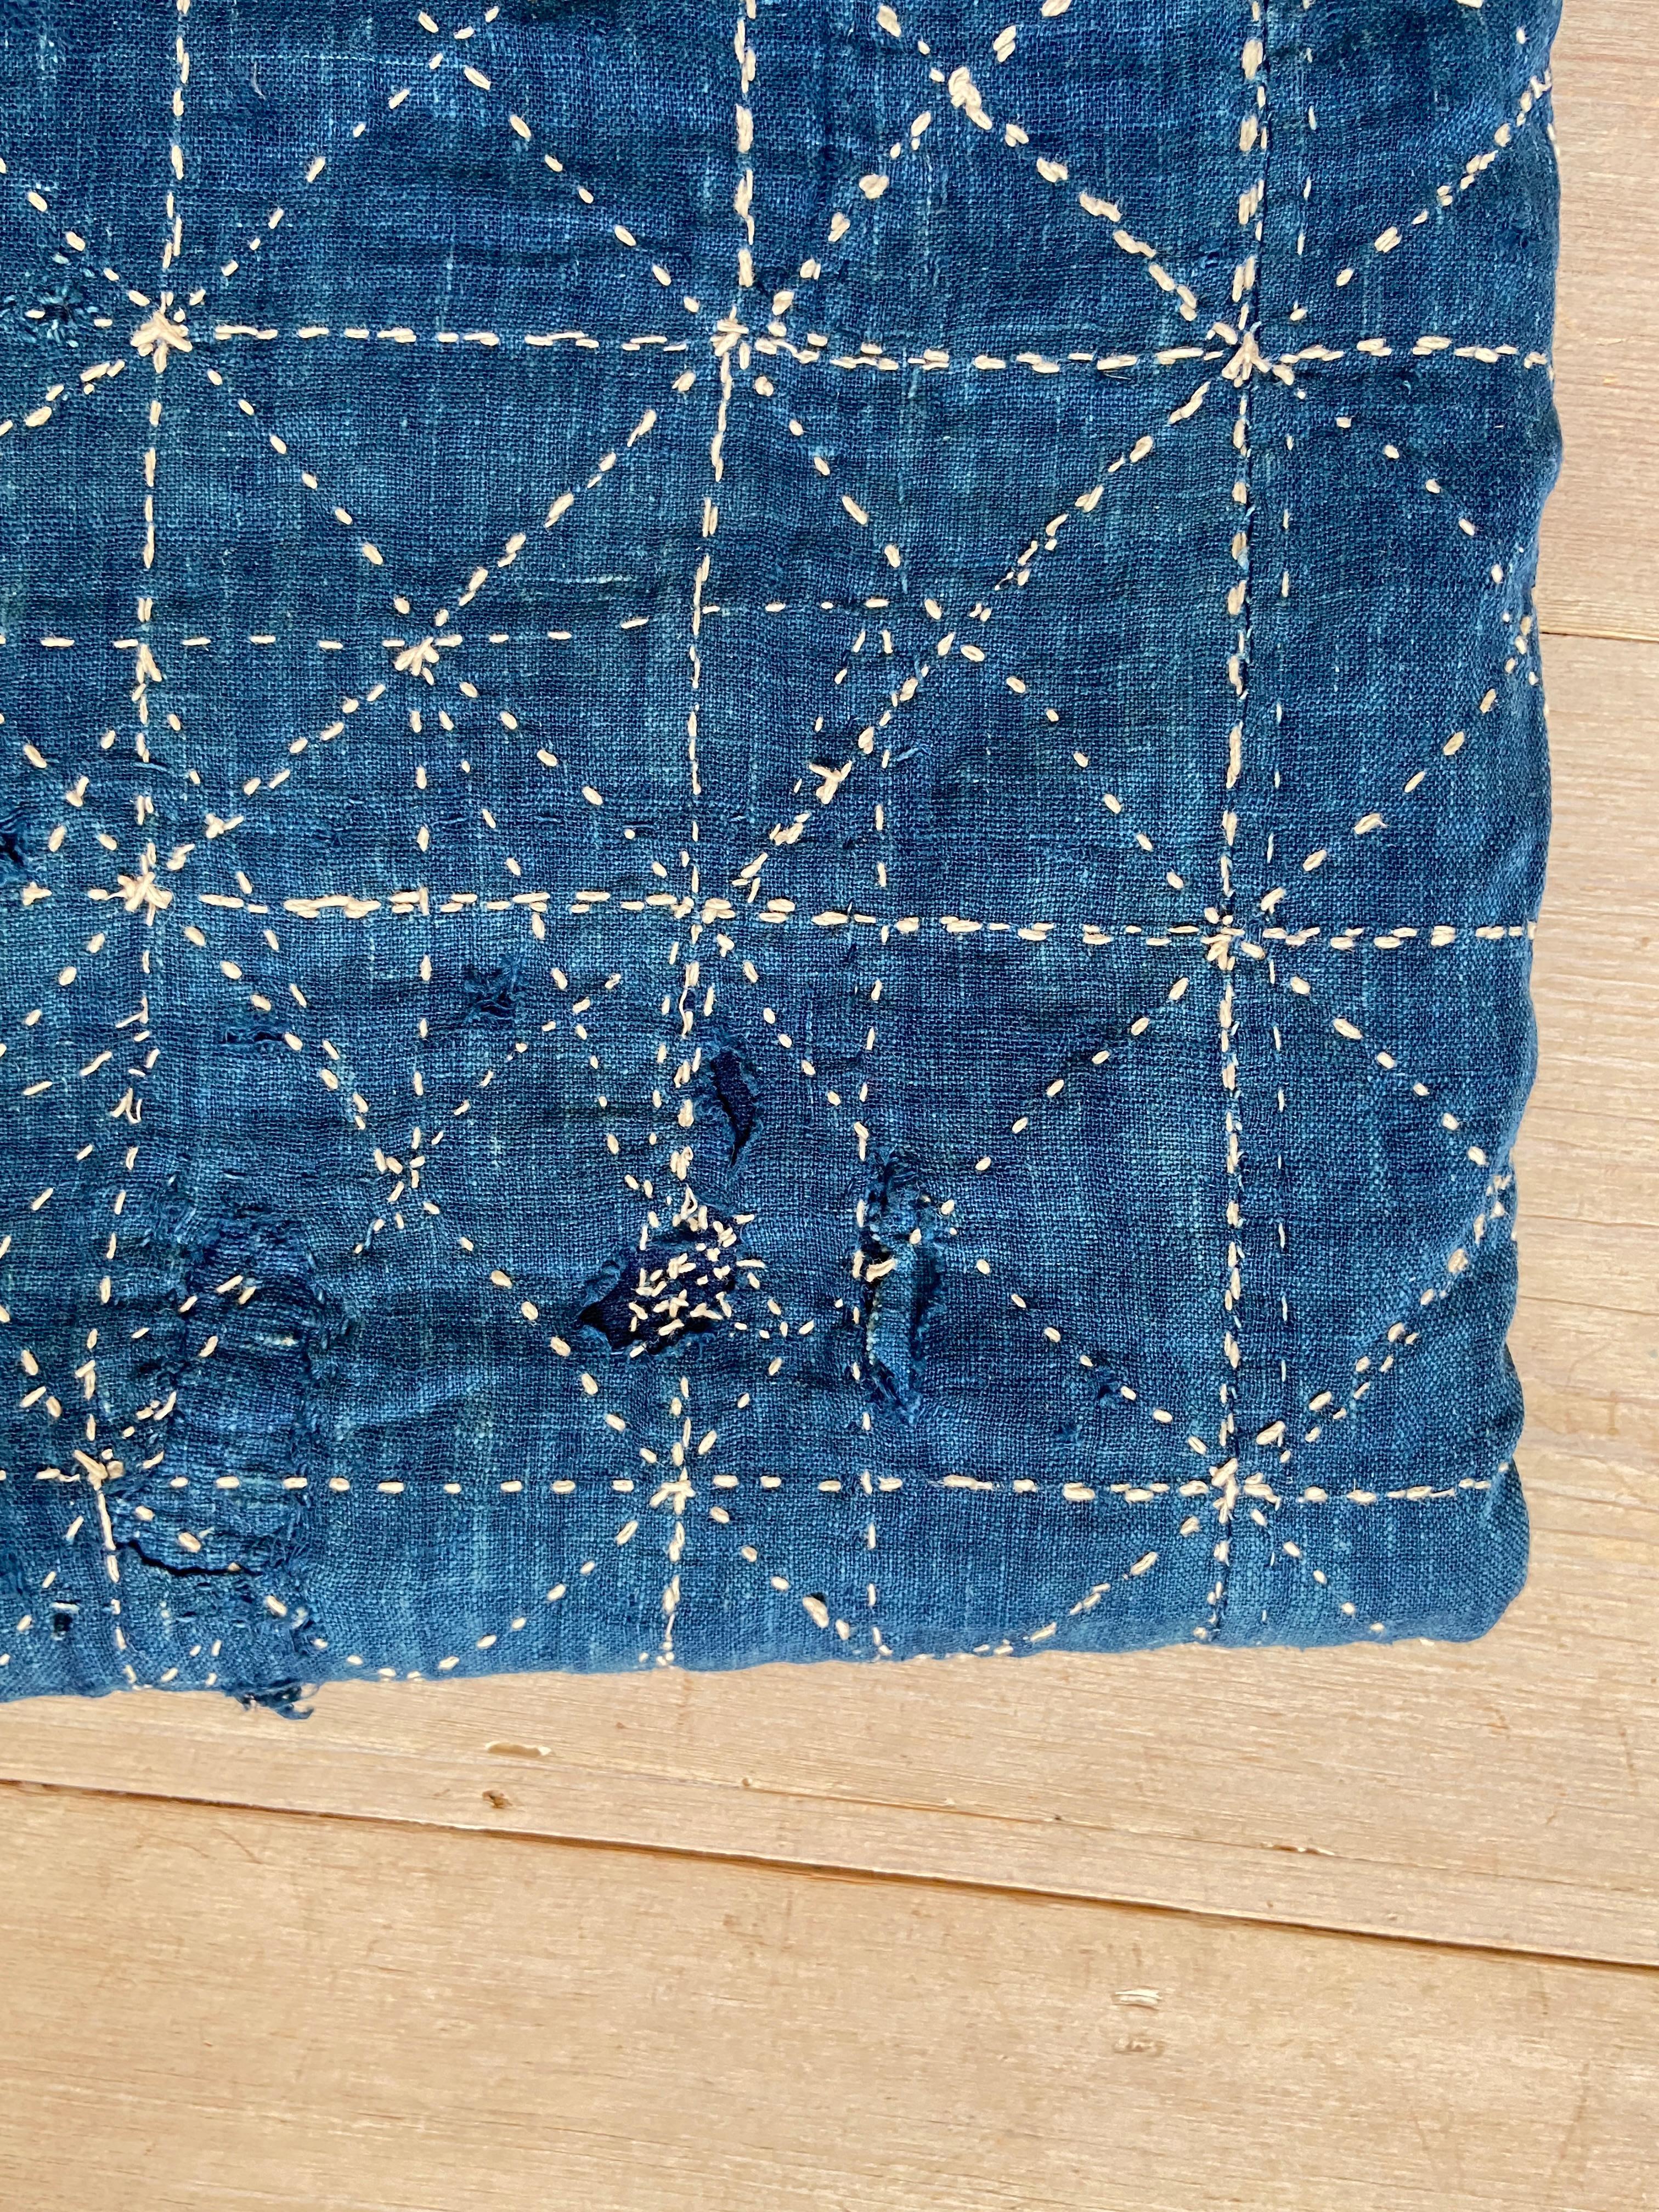 Fait main Vintage Handcraft Patched Textile 